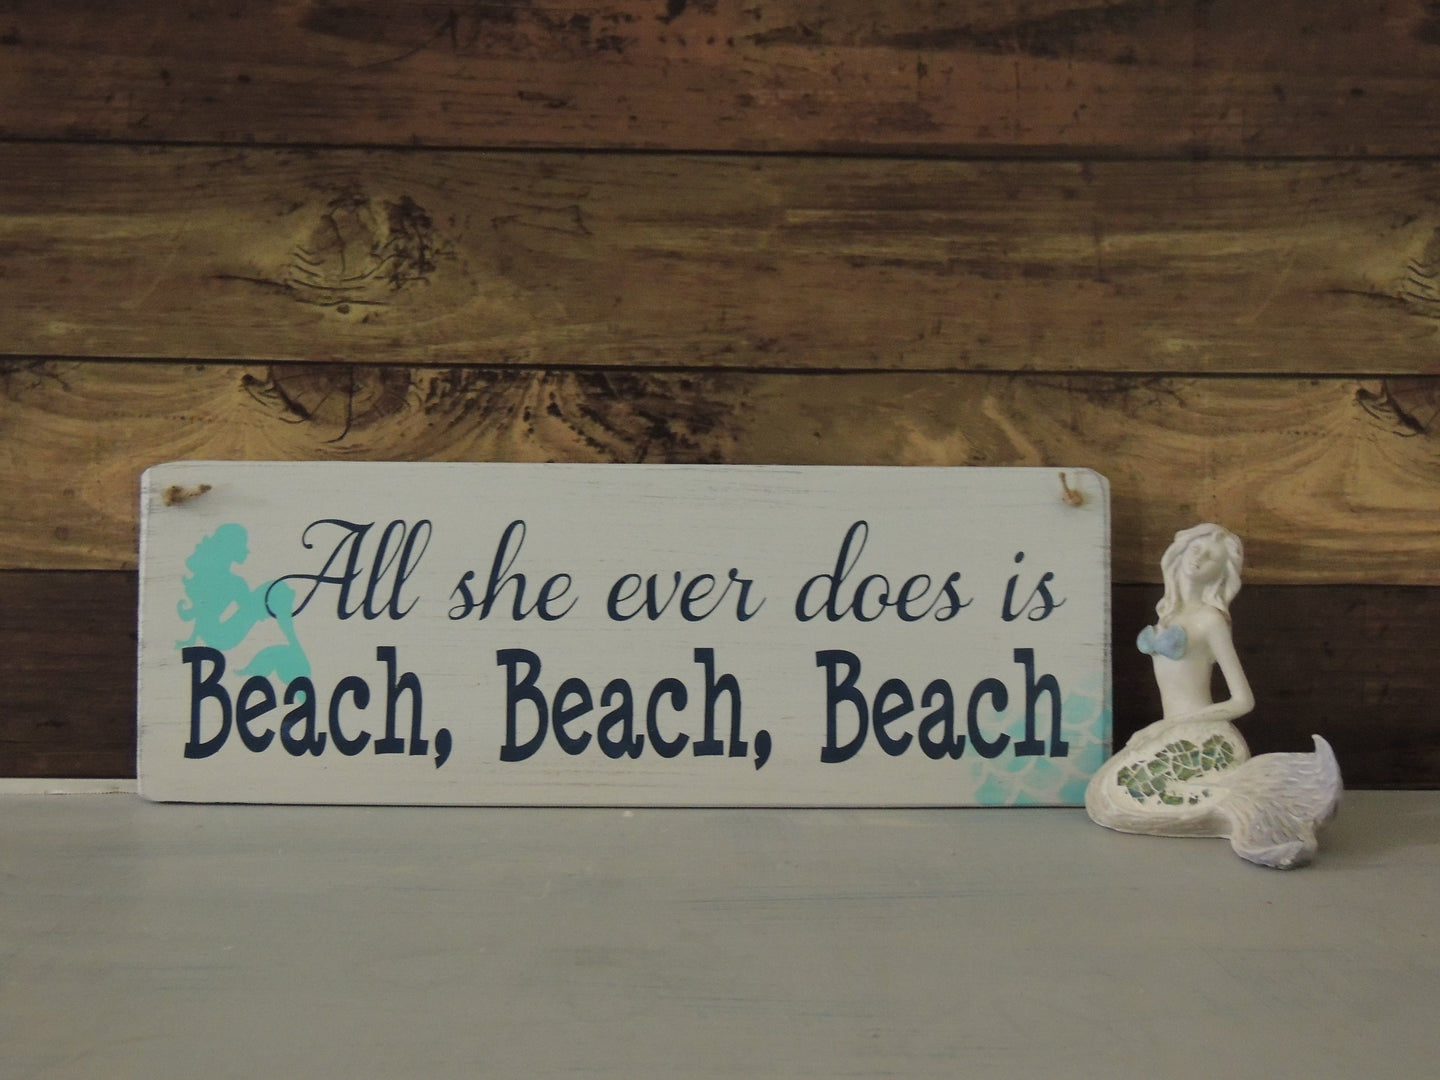 All She Ever Does is Beach, Beach, Beach